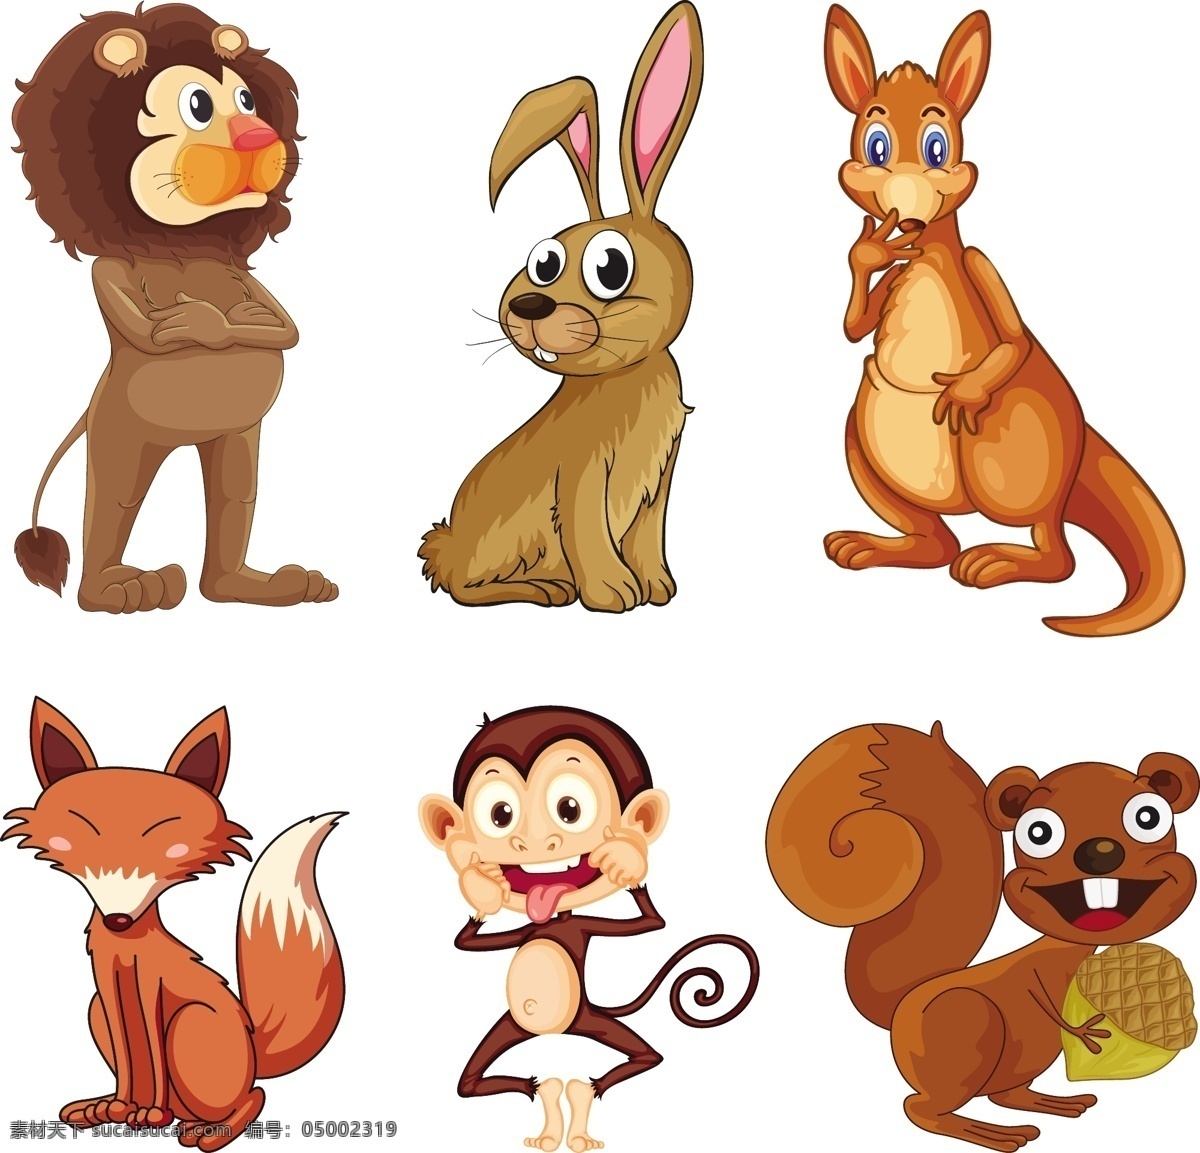 卡通动物插画 头像 表情 野生动物 手绘动物 动物 素描 手绘 卡通动物园 动物园 卡通 可爱动物 小动物 动物贴纸 生物世界